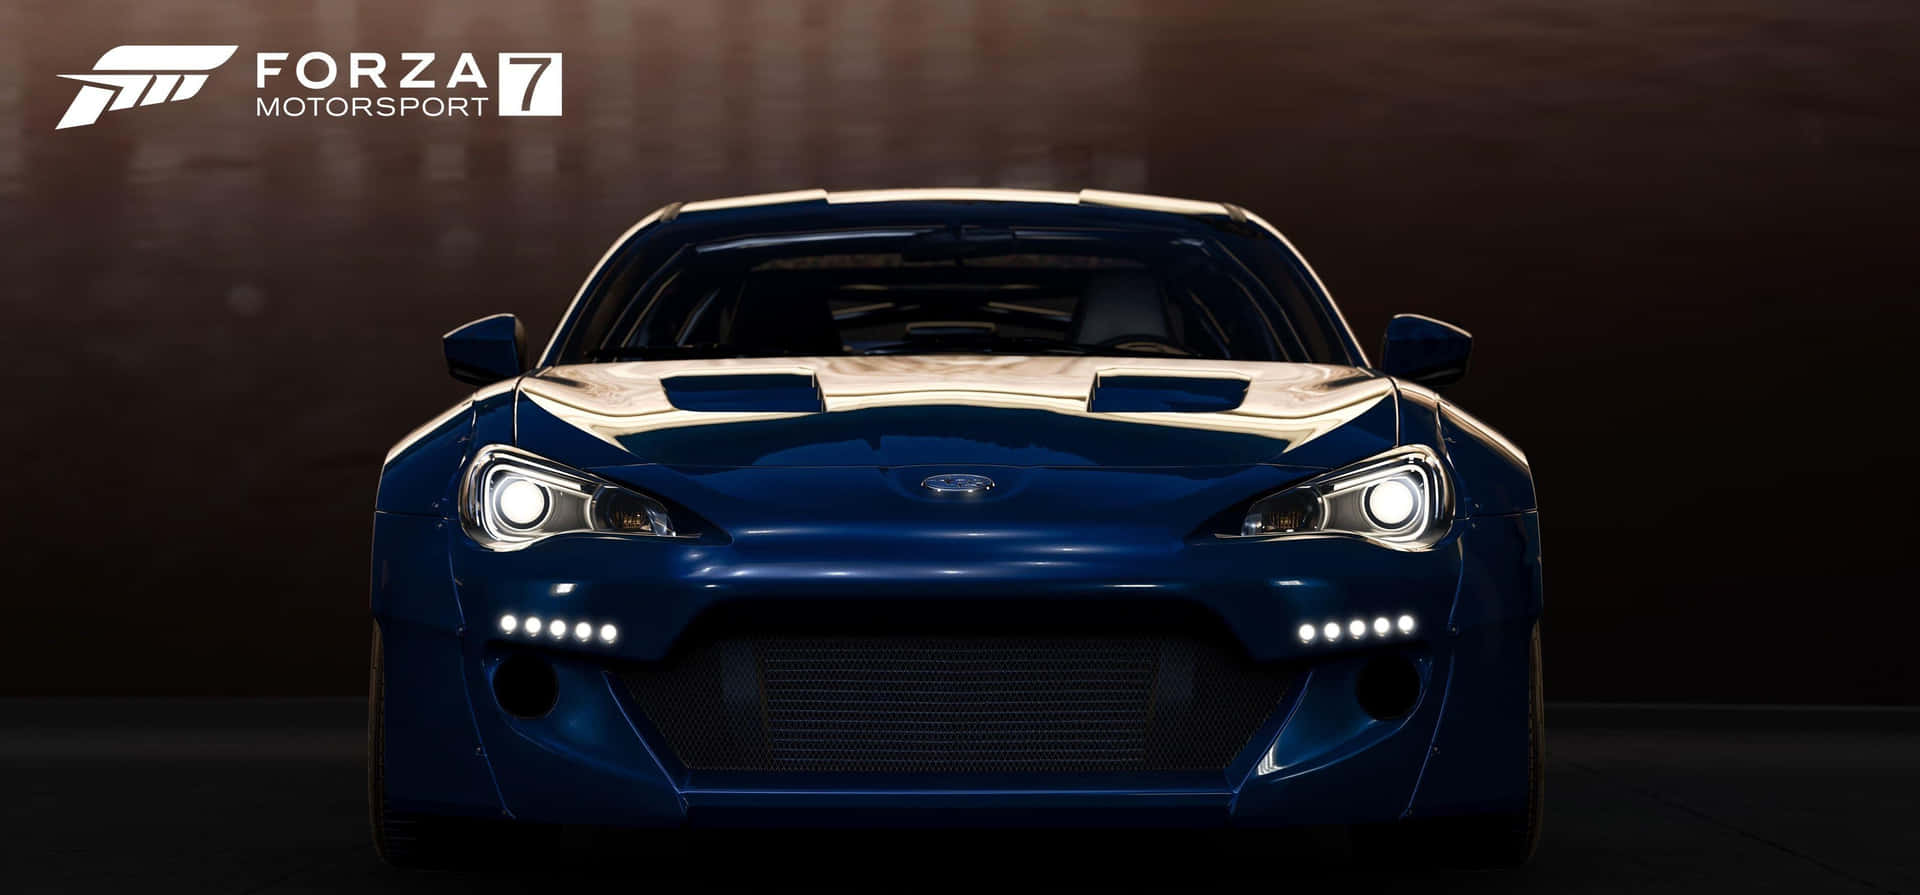 Forza7 - Forza 7 - Forza 7 - Forza 7 - Forza 7 - Forza 7 - Forza.